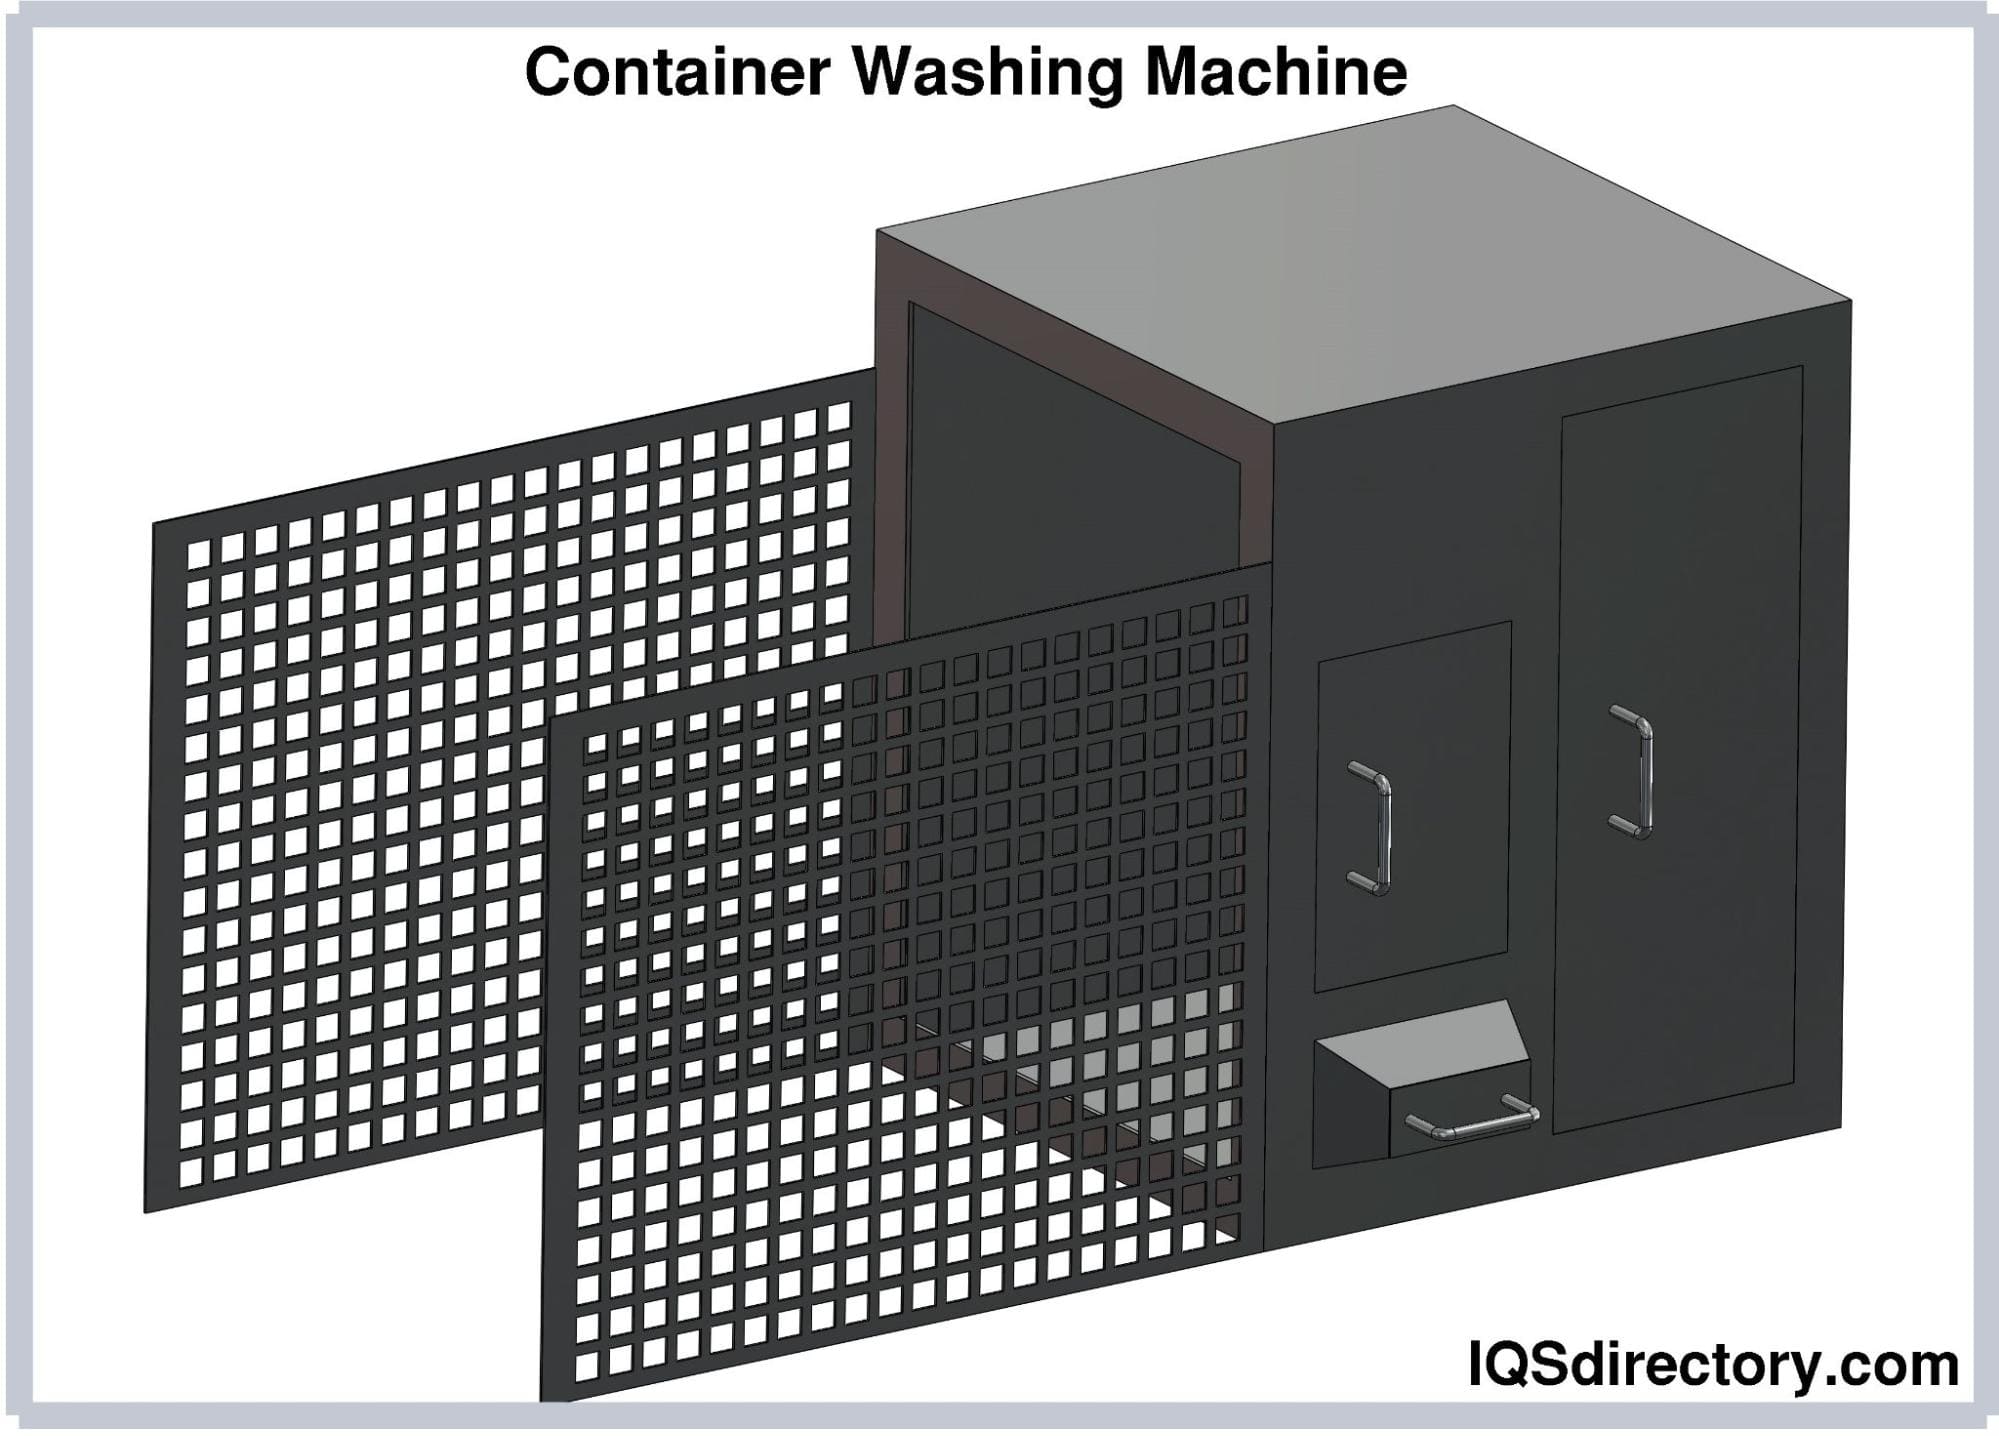 Container Washing Machine